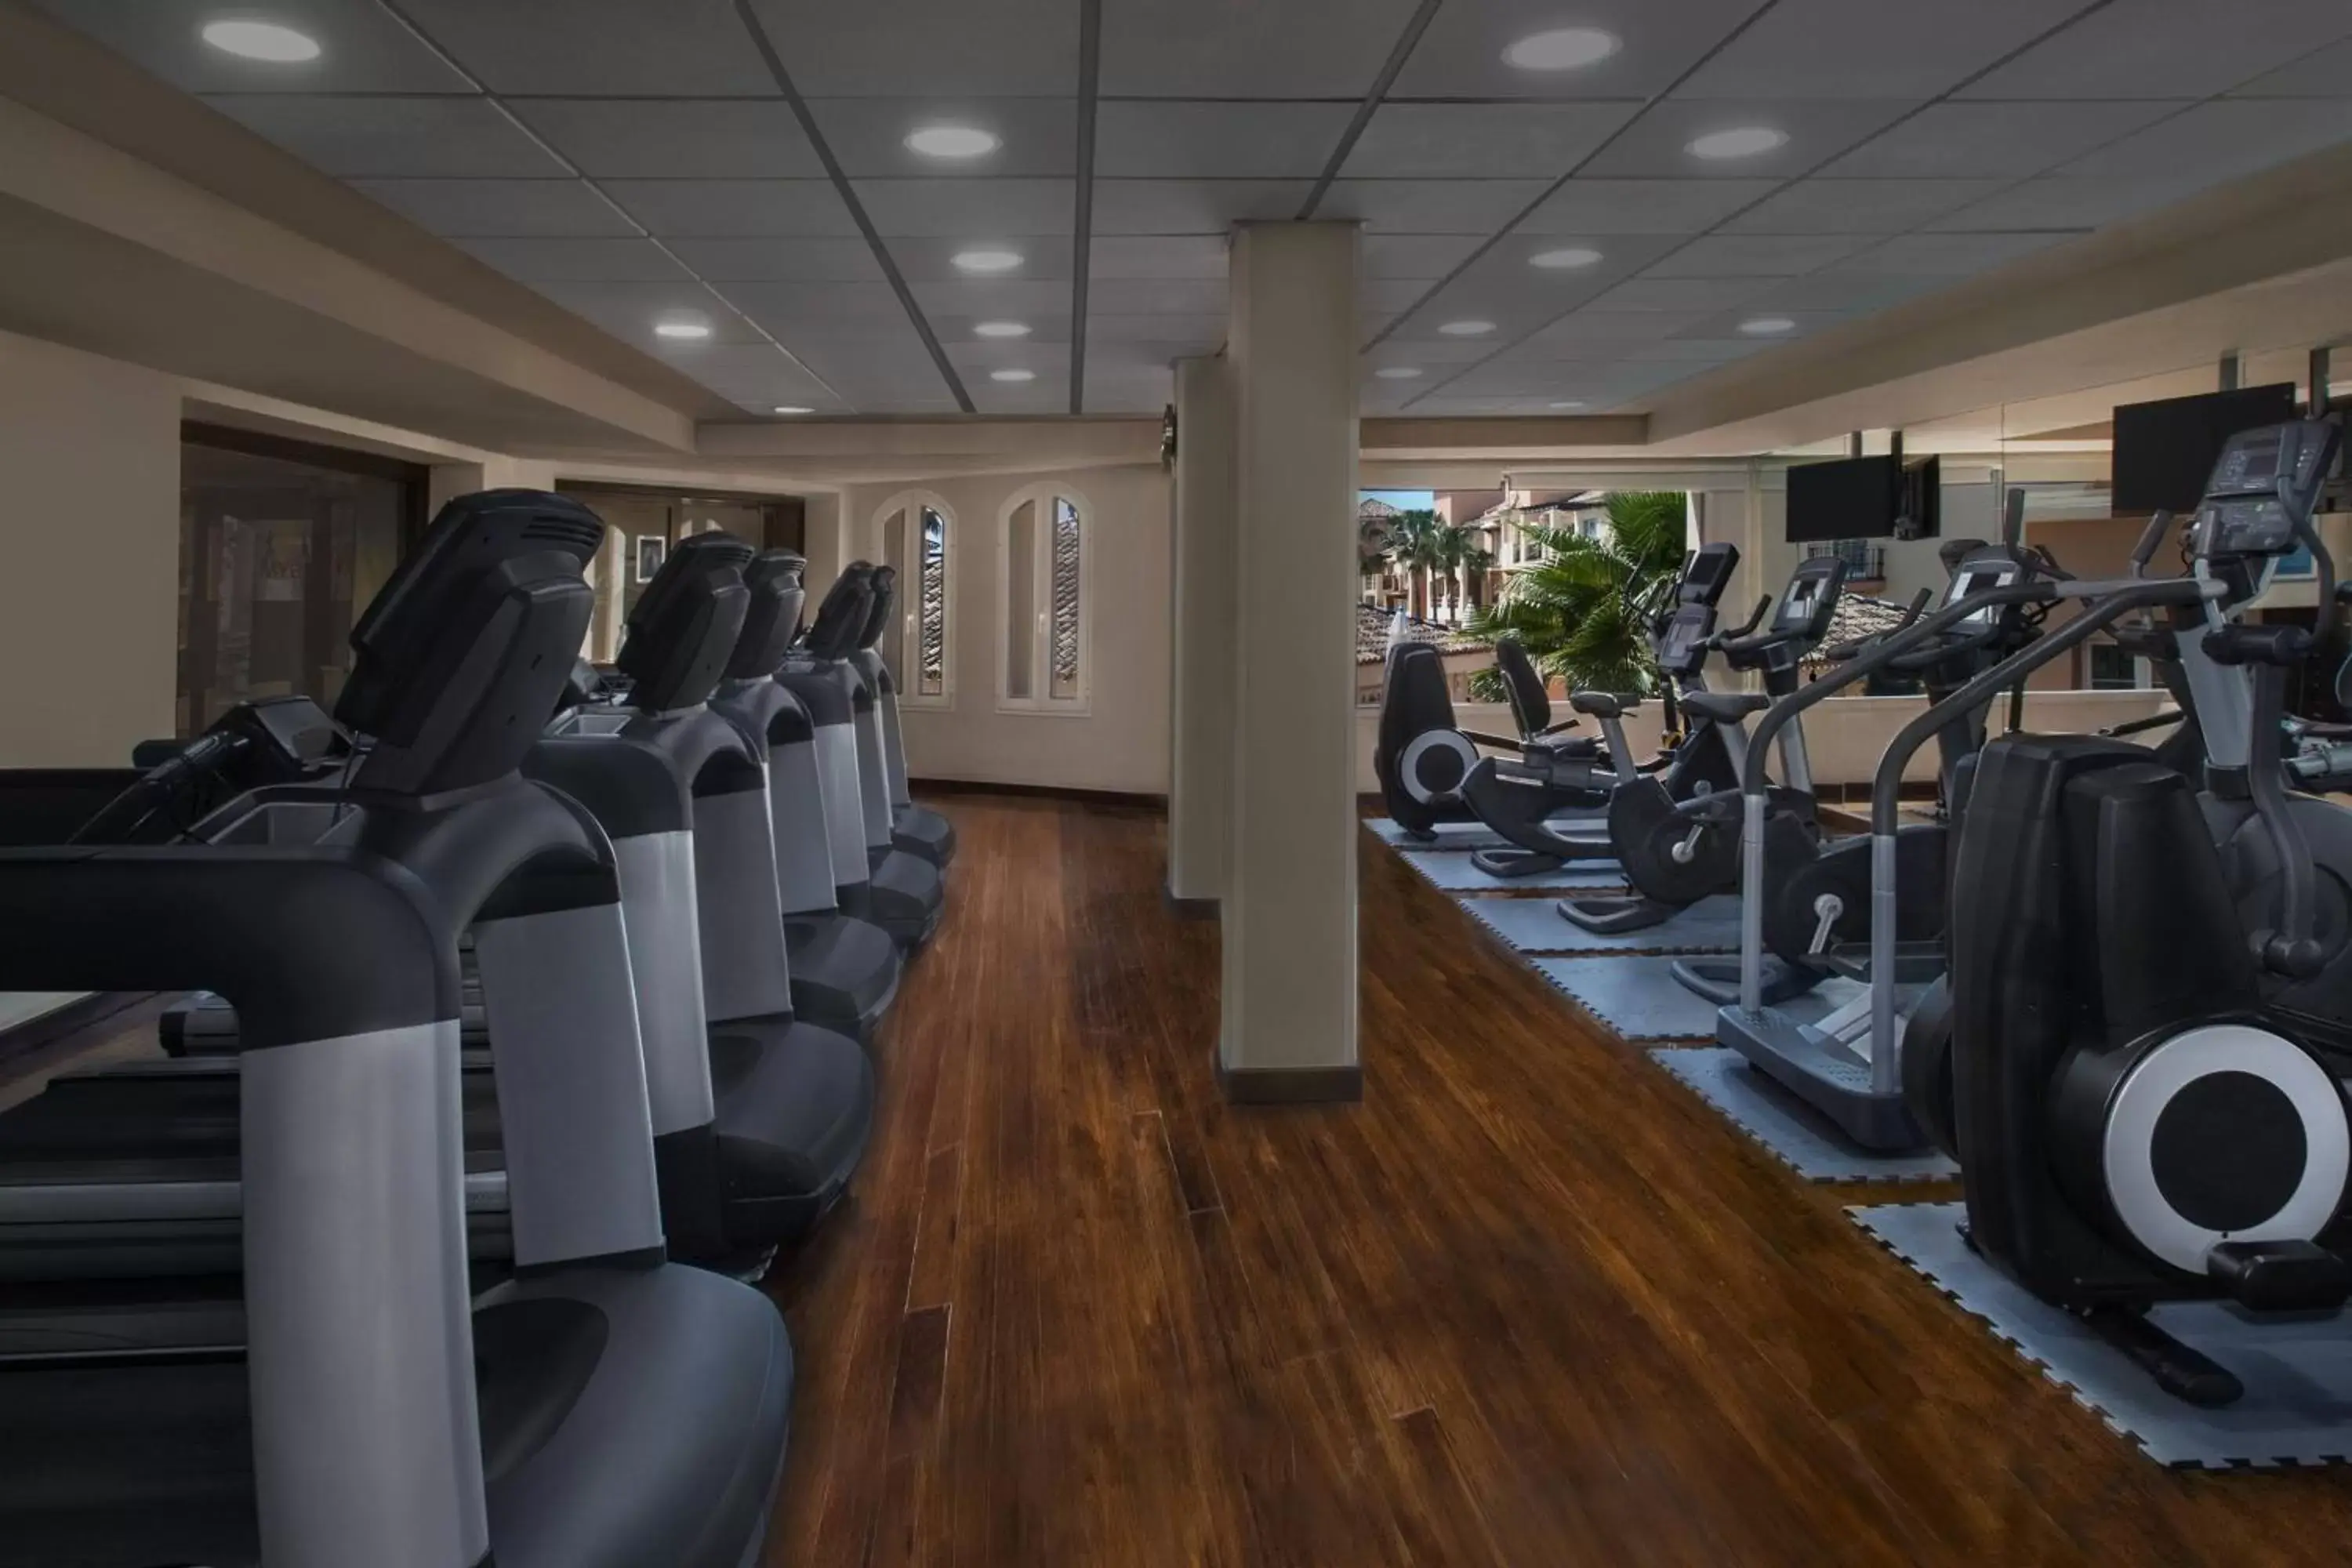 Fitness centre/facilities, Fitness Center/Facilities in Marriott's Marbella Beach Resort